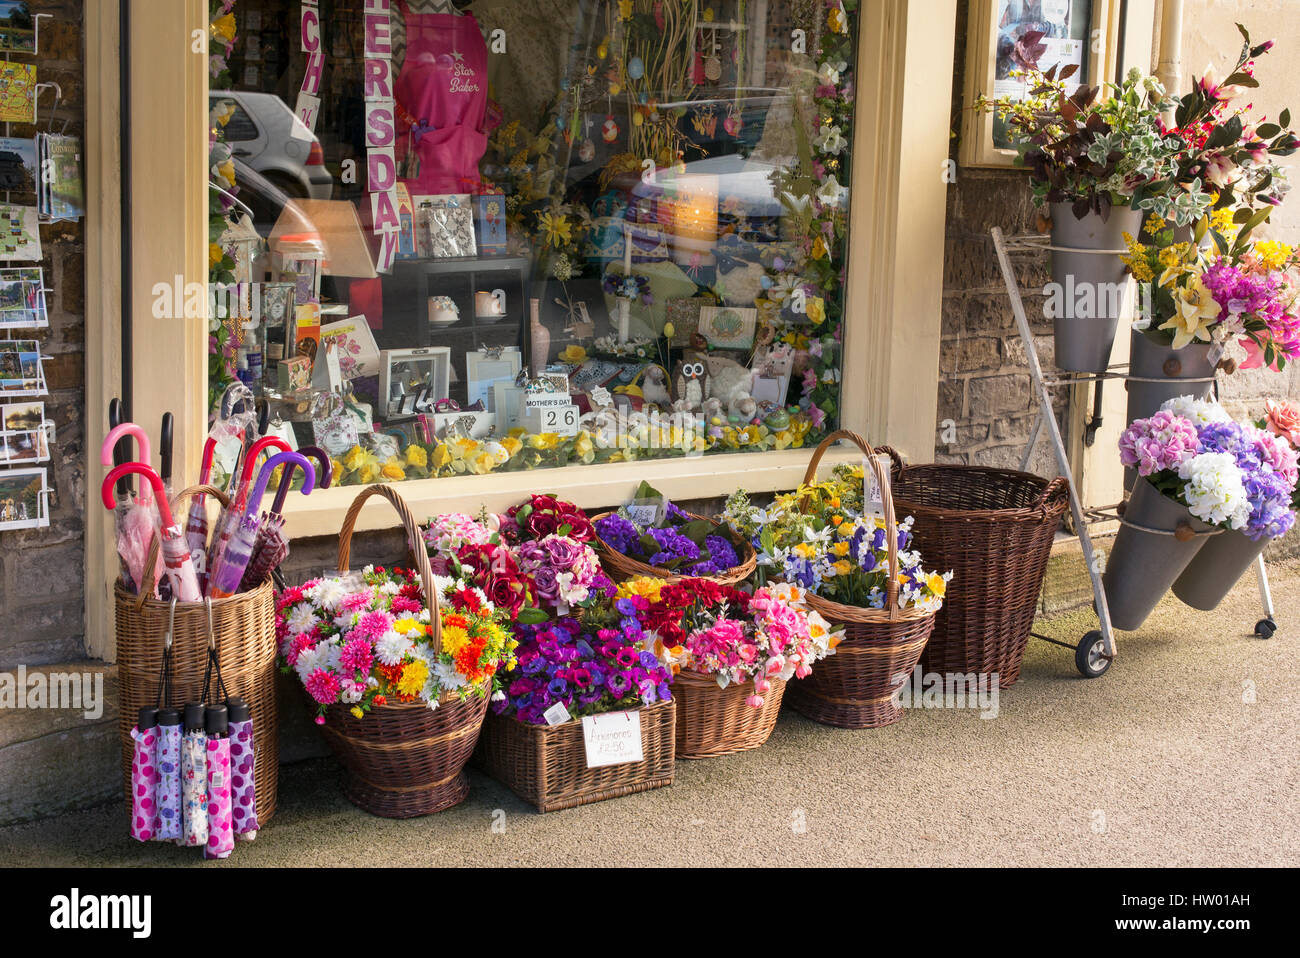 Des paniers en osier coloré de fleurs en plastique à l'extérieur de Country House Boutique cadeaux. Burford, Cotswolds, Oxfordshire, Angleterre Banque D'Images